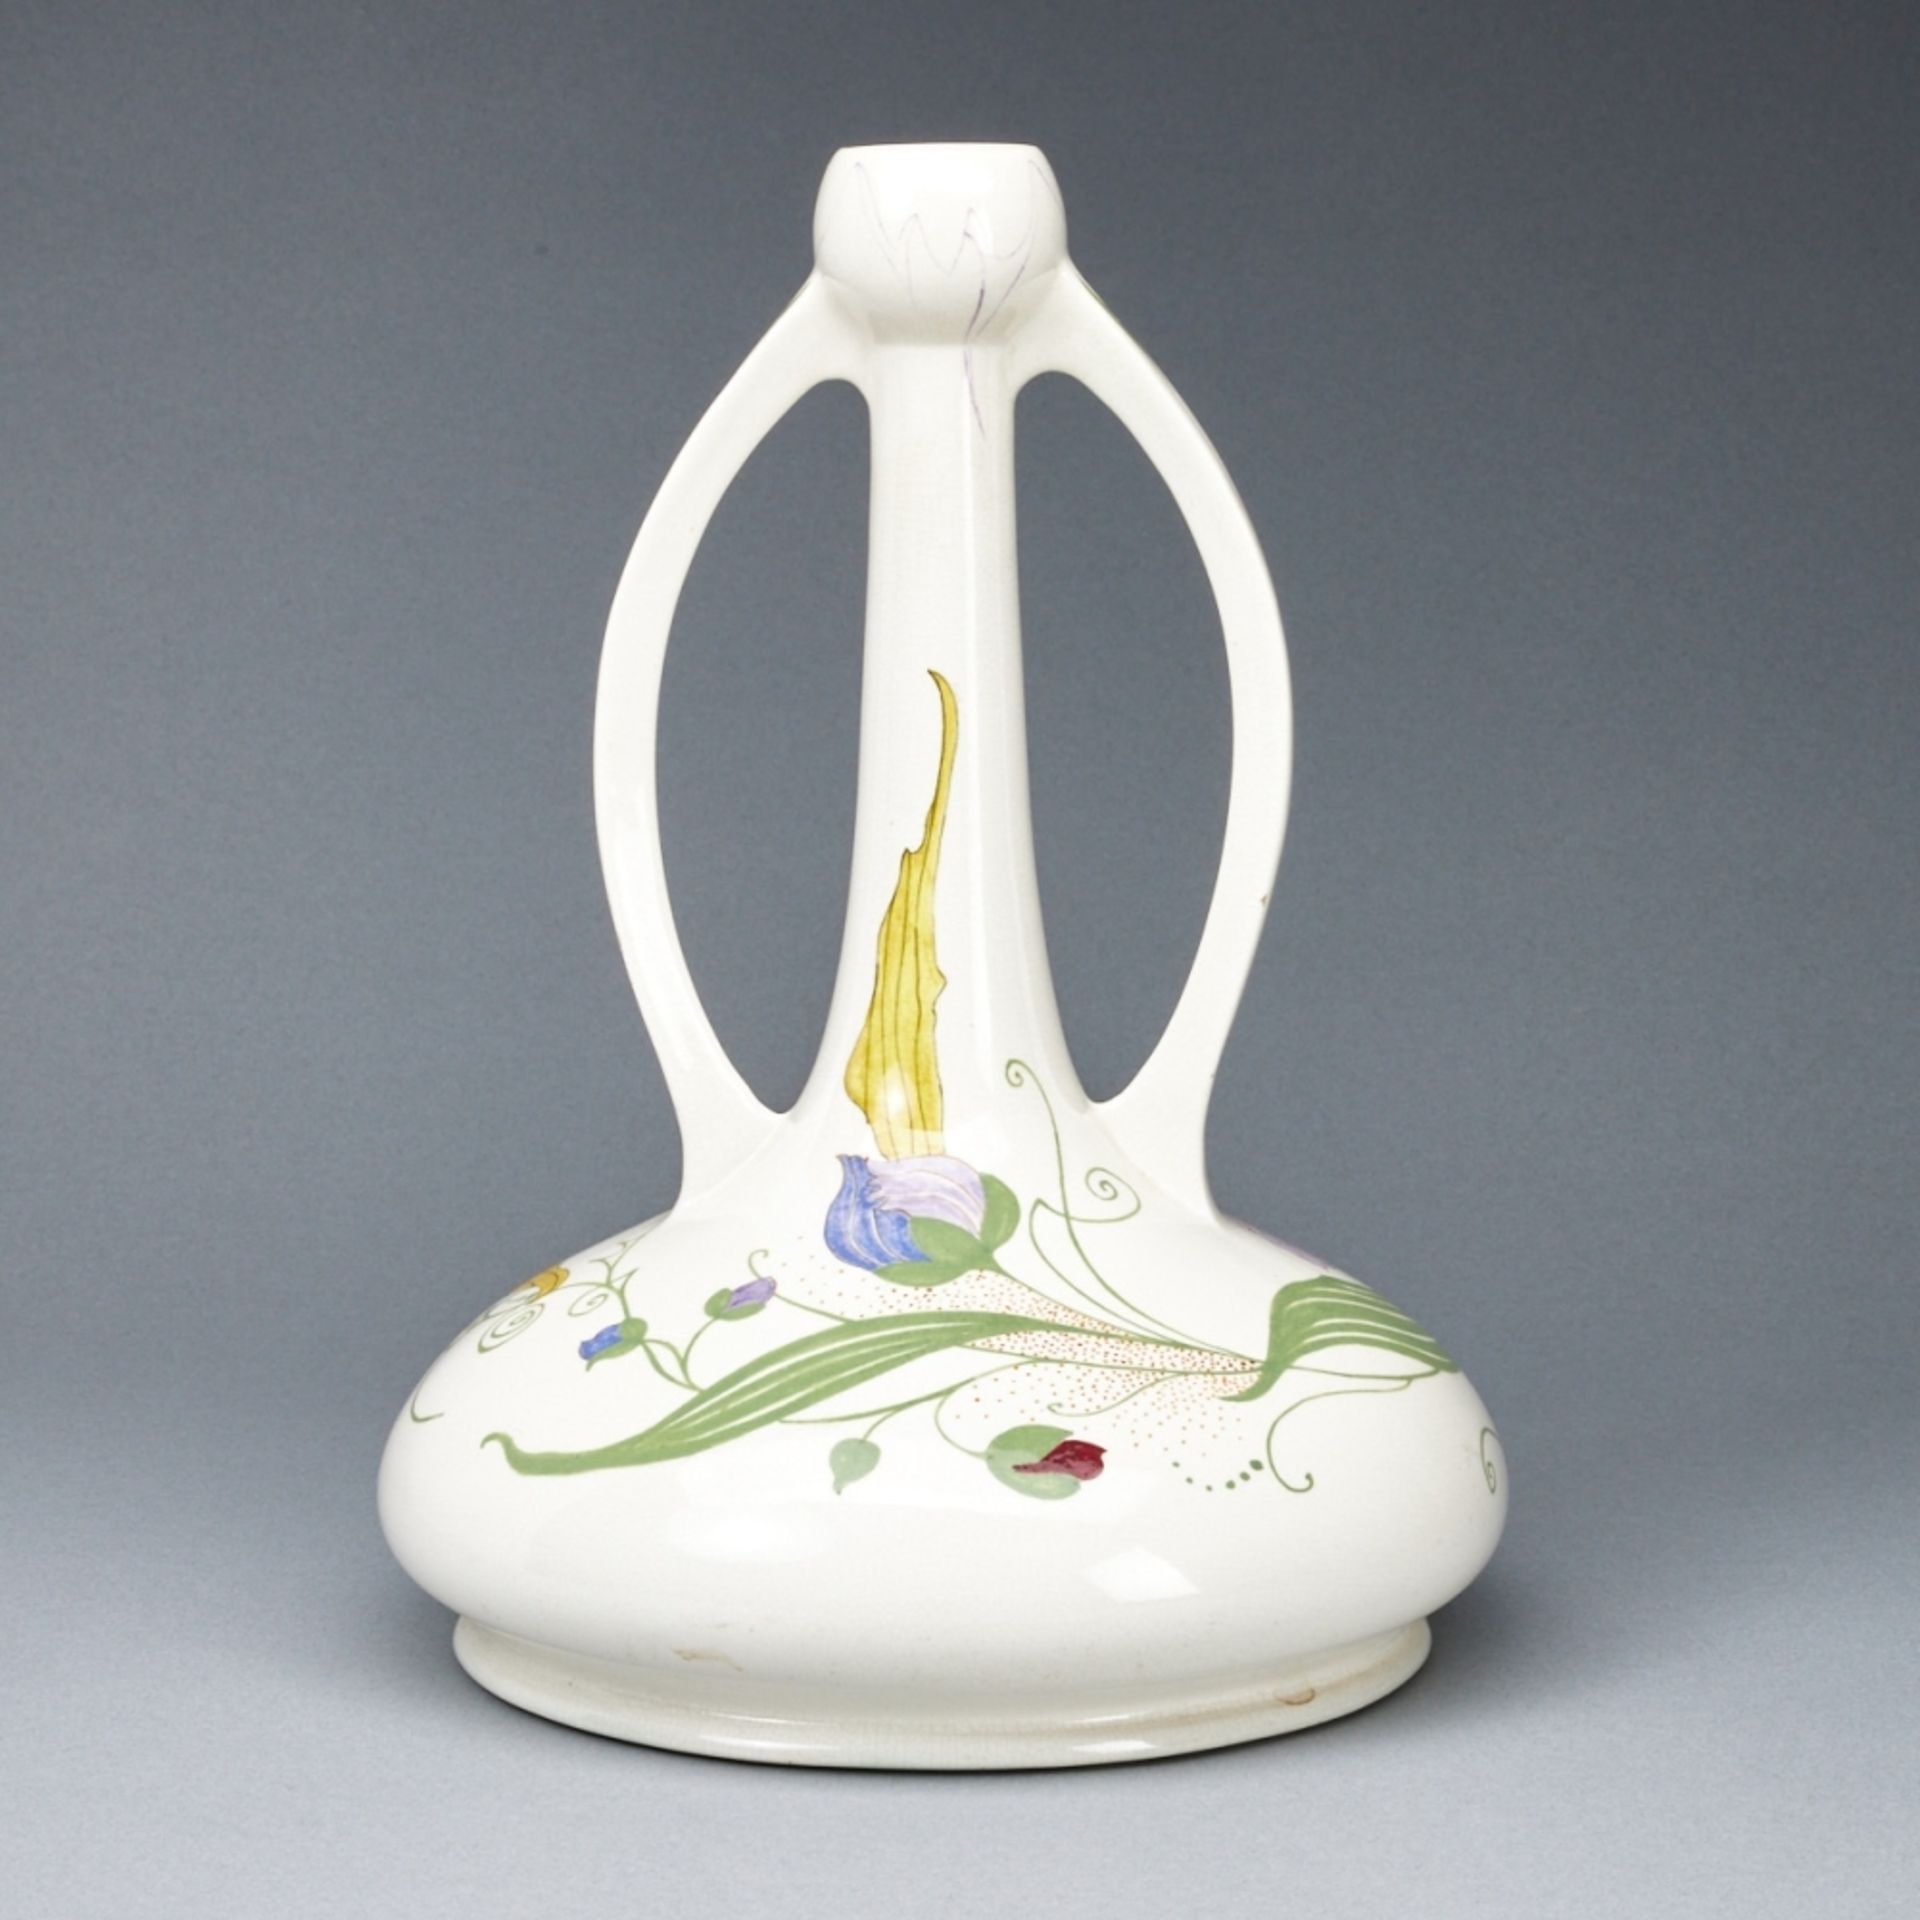 Vase mit 2 Henkeln - Orchidee Frauenschuh. Plateelbakkerij Zuid-Holland, Gouda um 1910. - Bild 2 aus 3